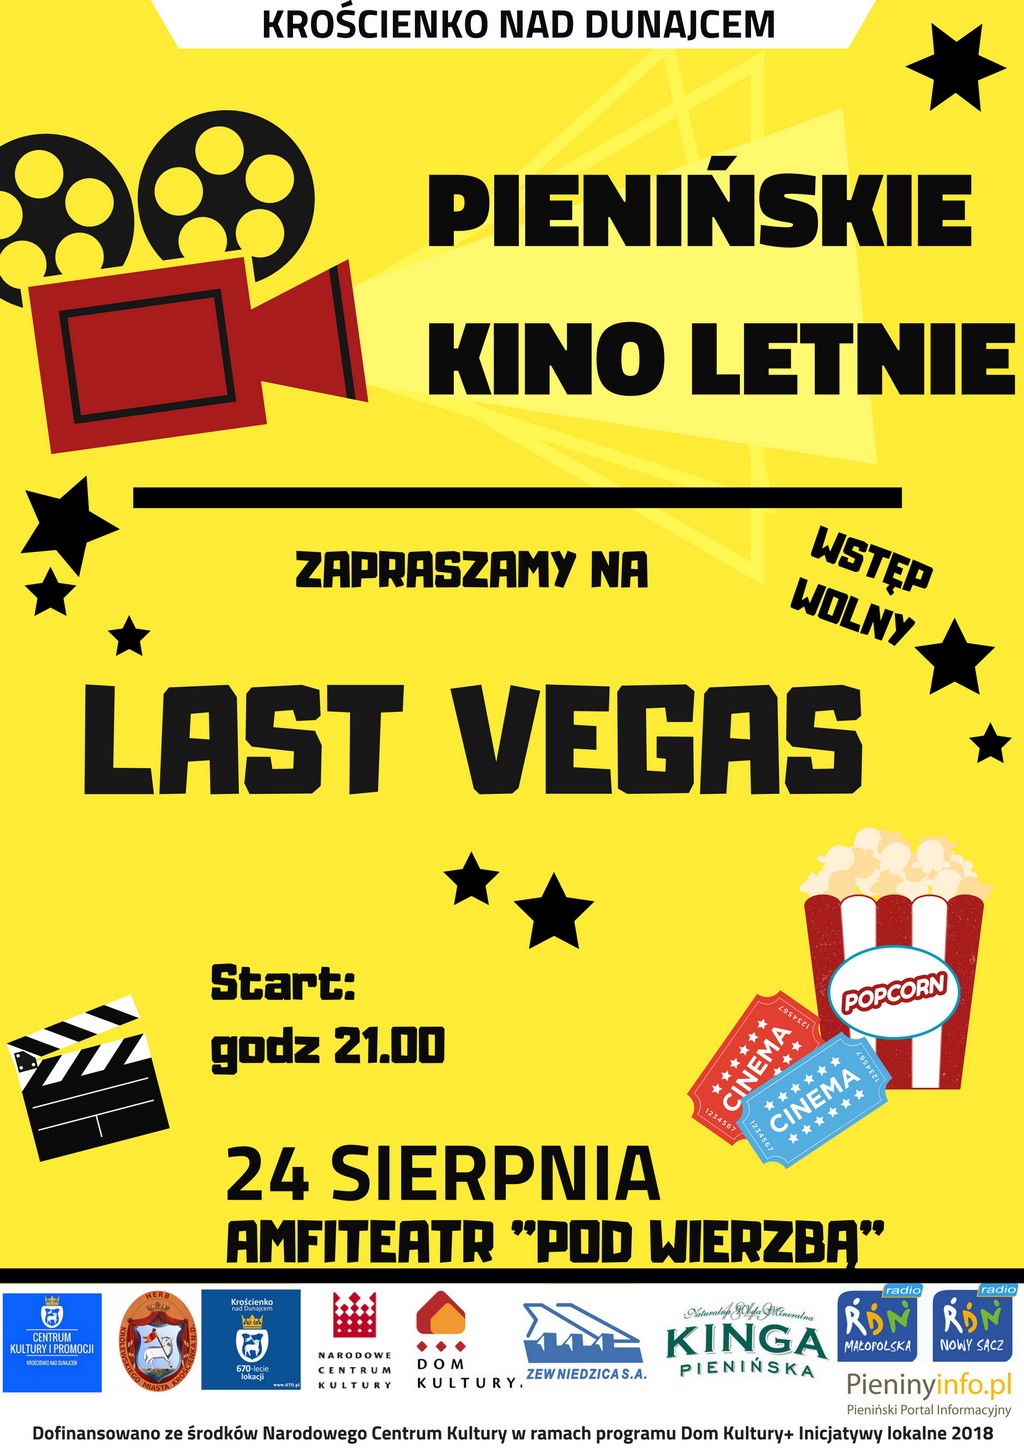 Pienińskie Kino Letnie